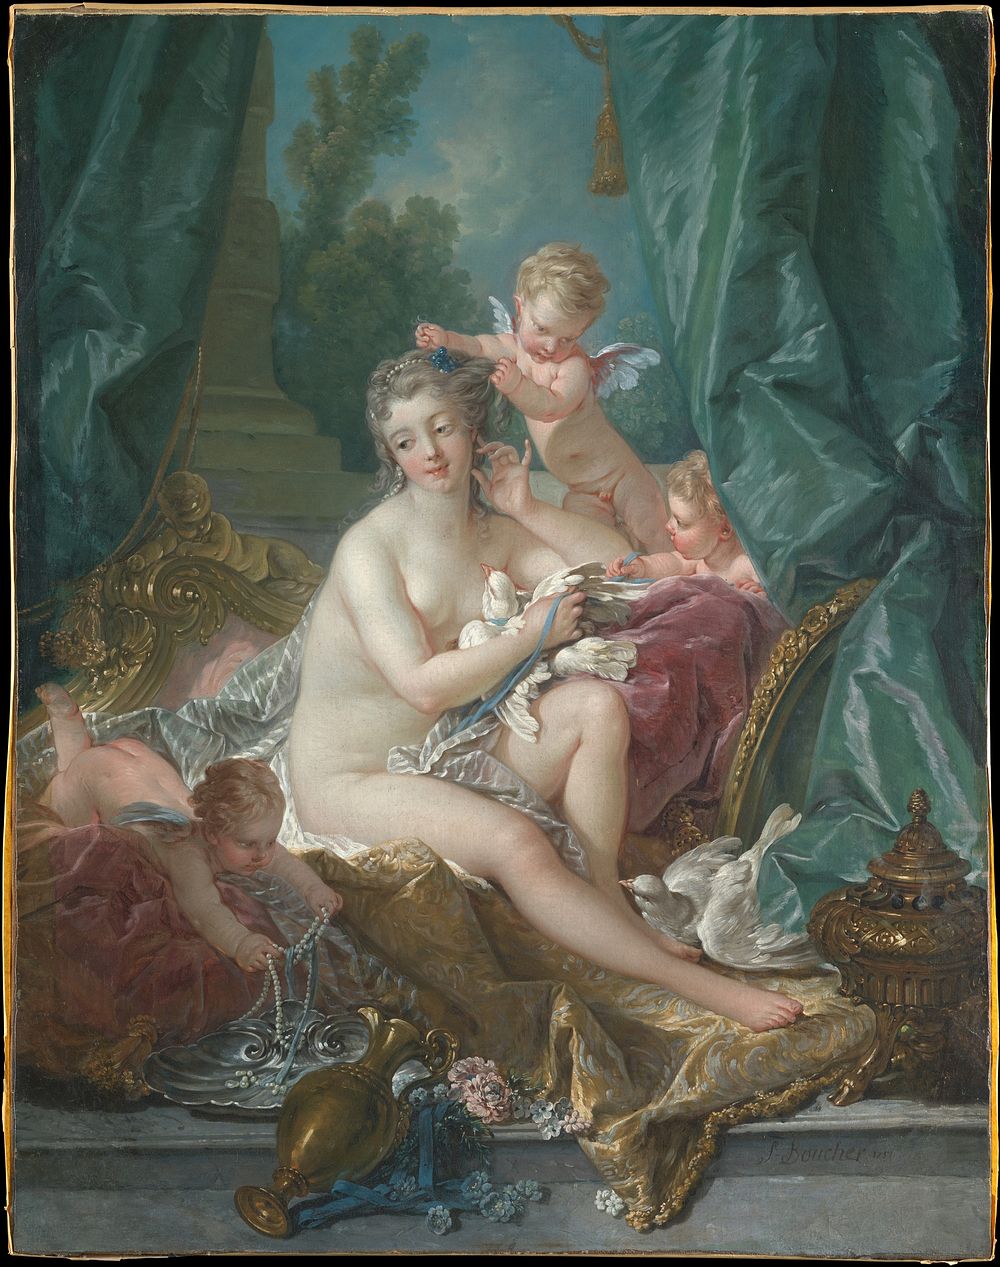 Francois Boucher's The Toilette of Venus (1751) famous painting.  